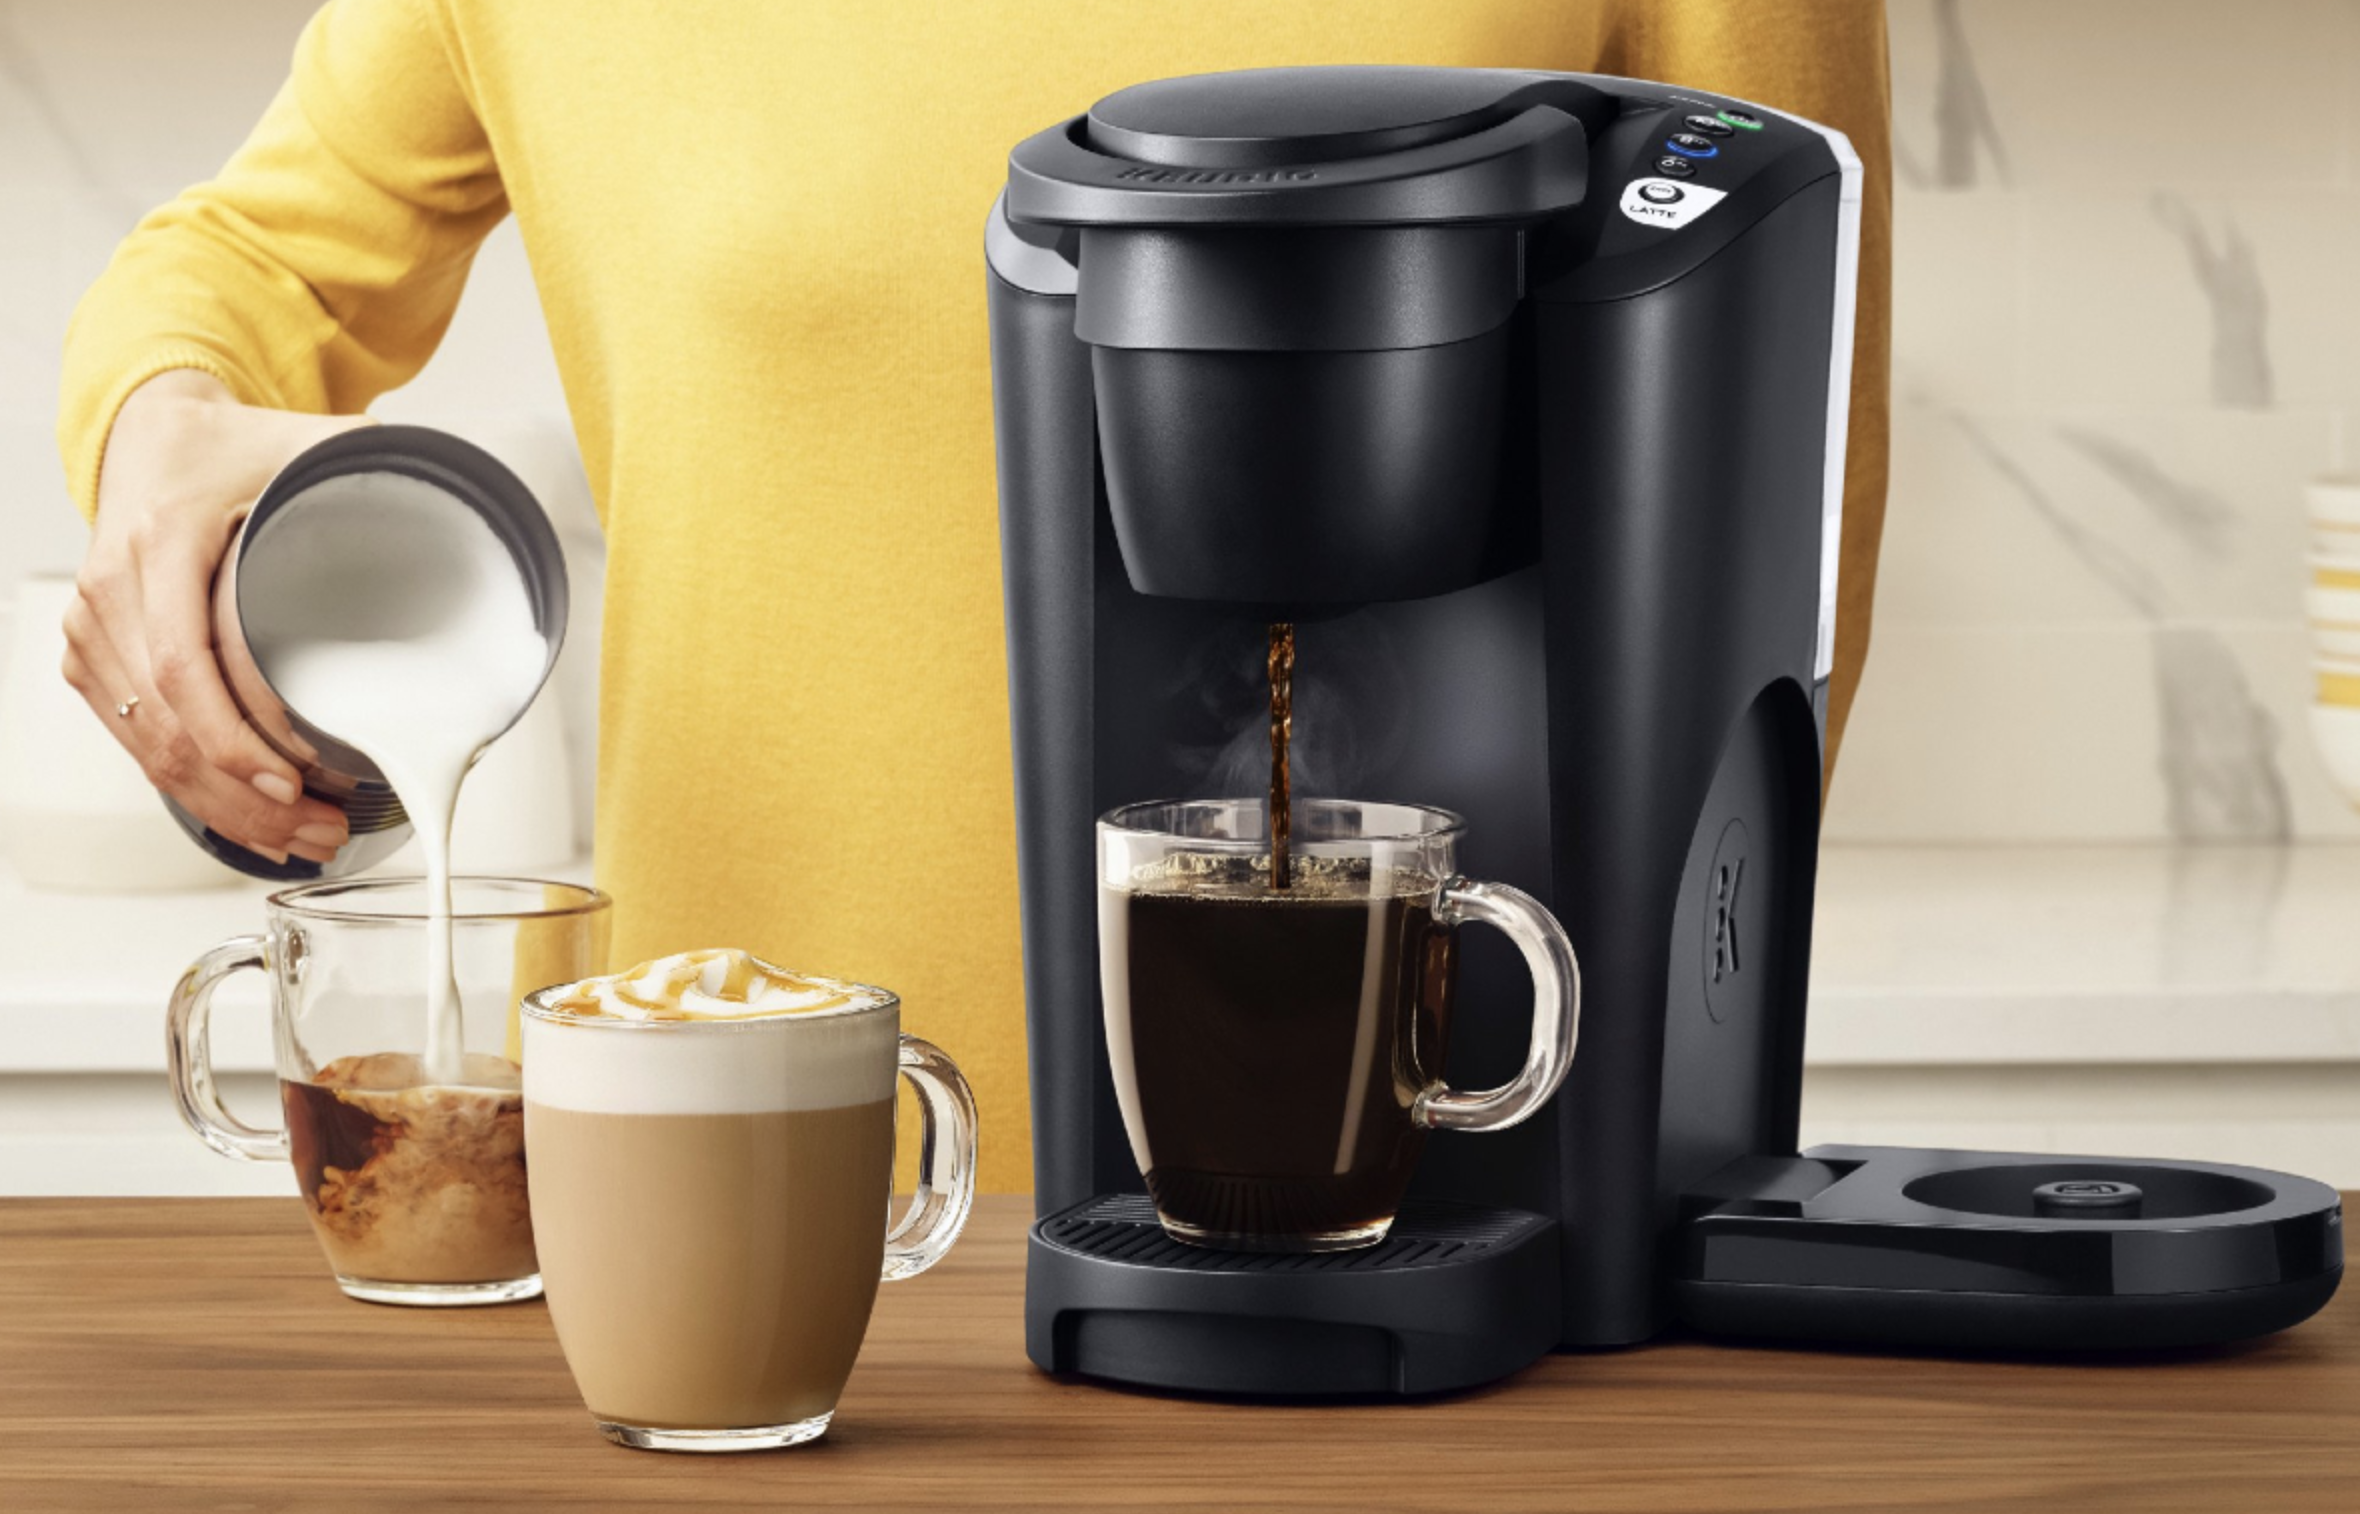 https://www.digitaltrends.com/wp-content/uploads/2023/05/Keurig-K-Latte-Single-Serve-K-Cup-Pod-Coffee-Maker.png?fit=2360%2C1514&p=1